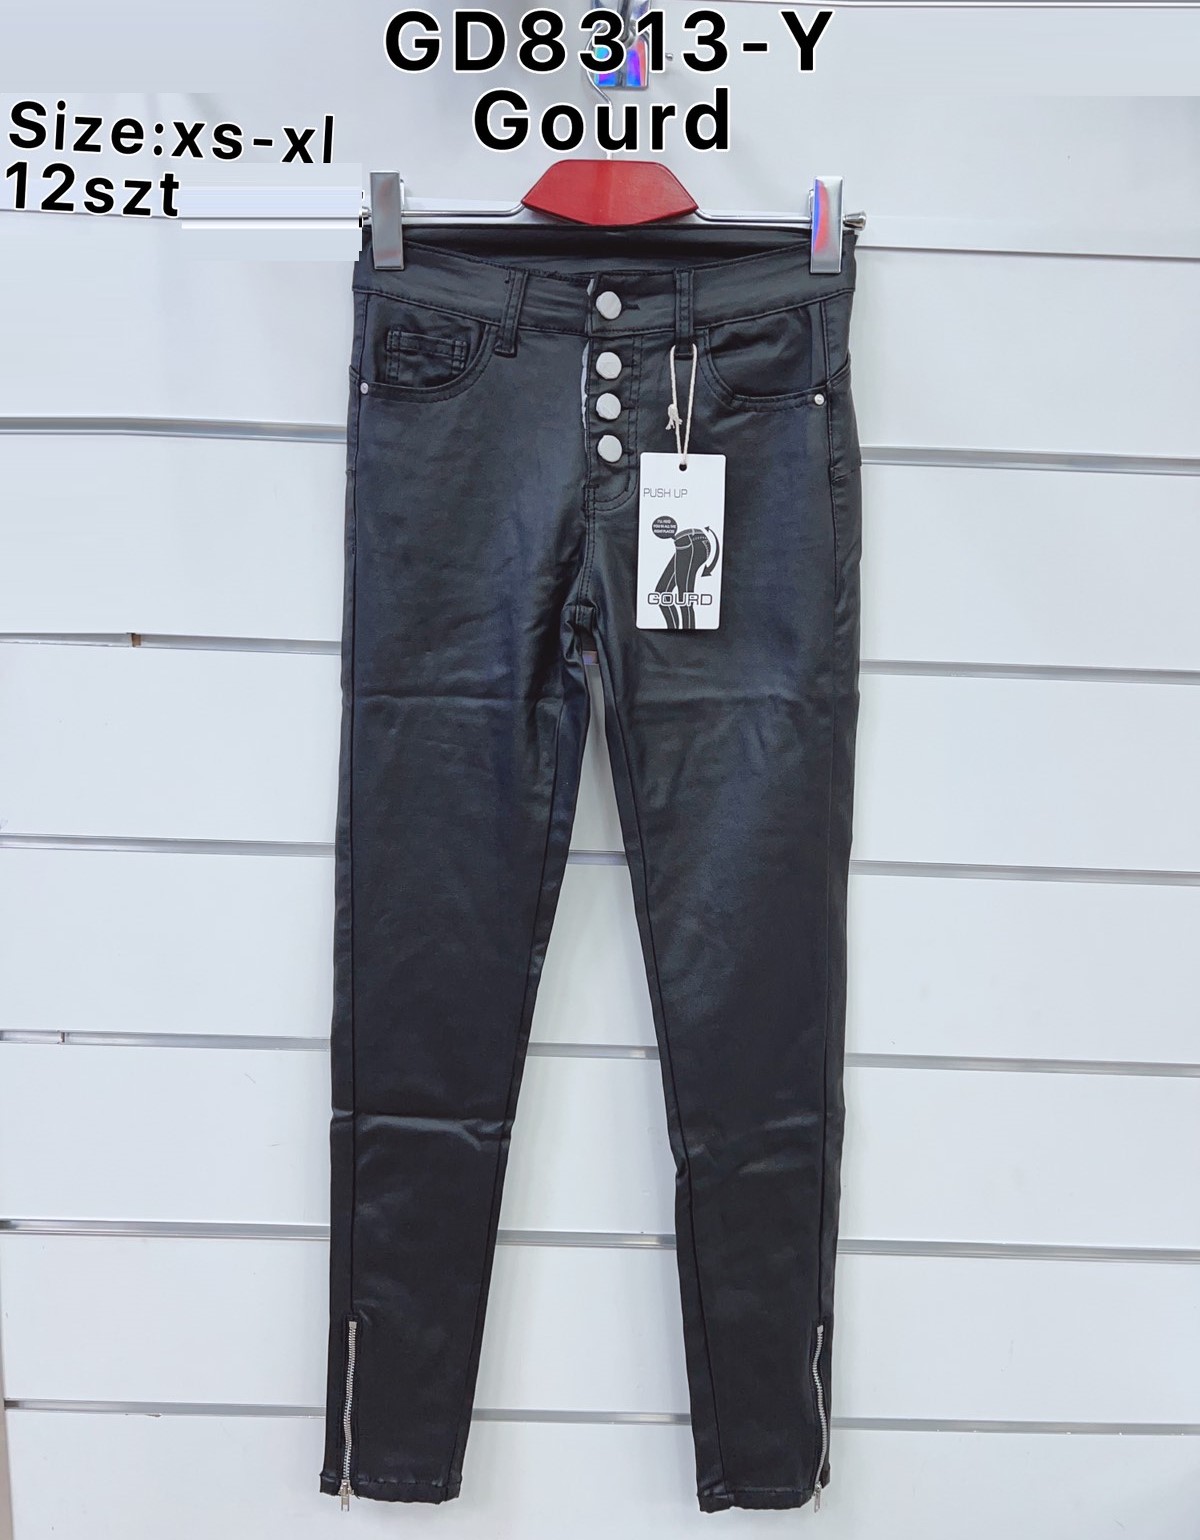 Spodnie  damskie jeans Roz  XS-XL  1 kolor . Paczka 12sz.t